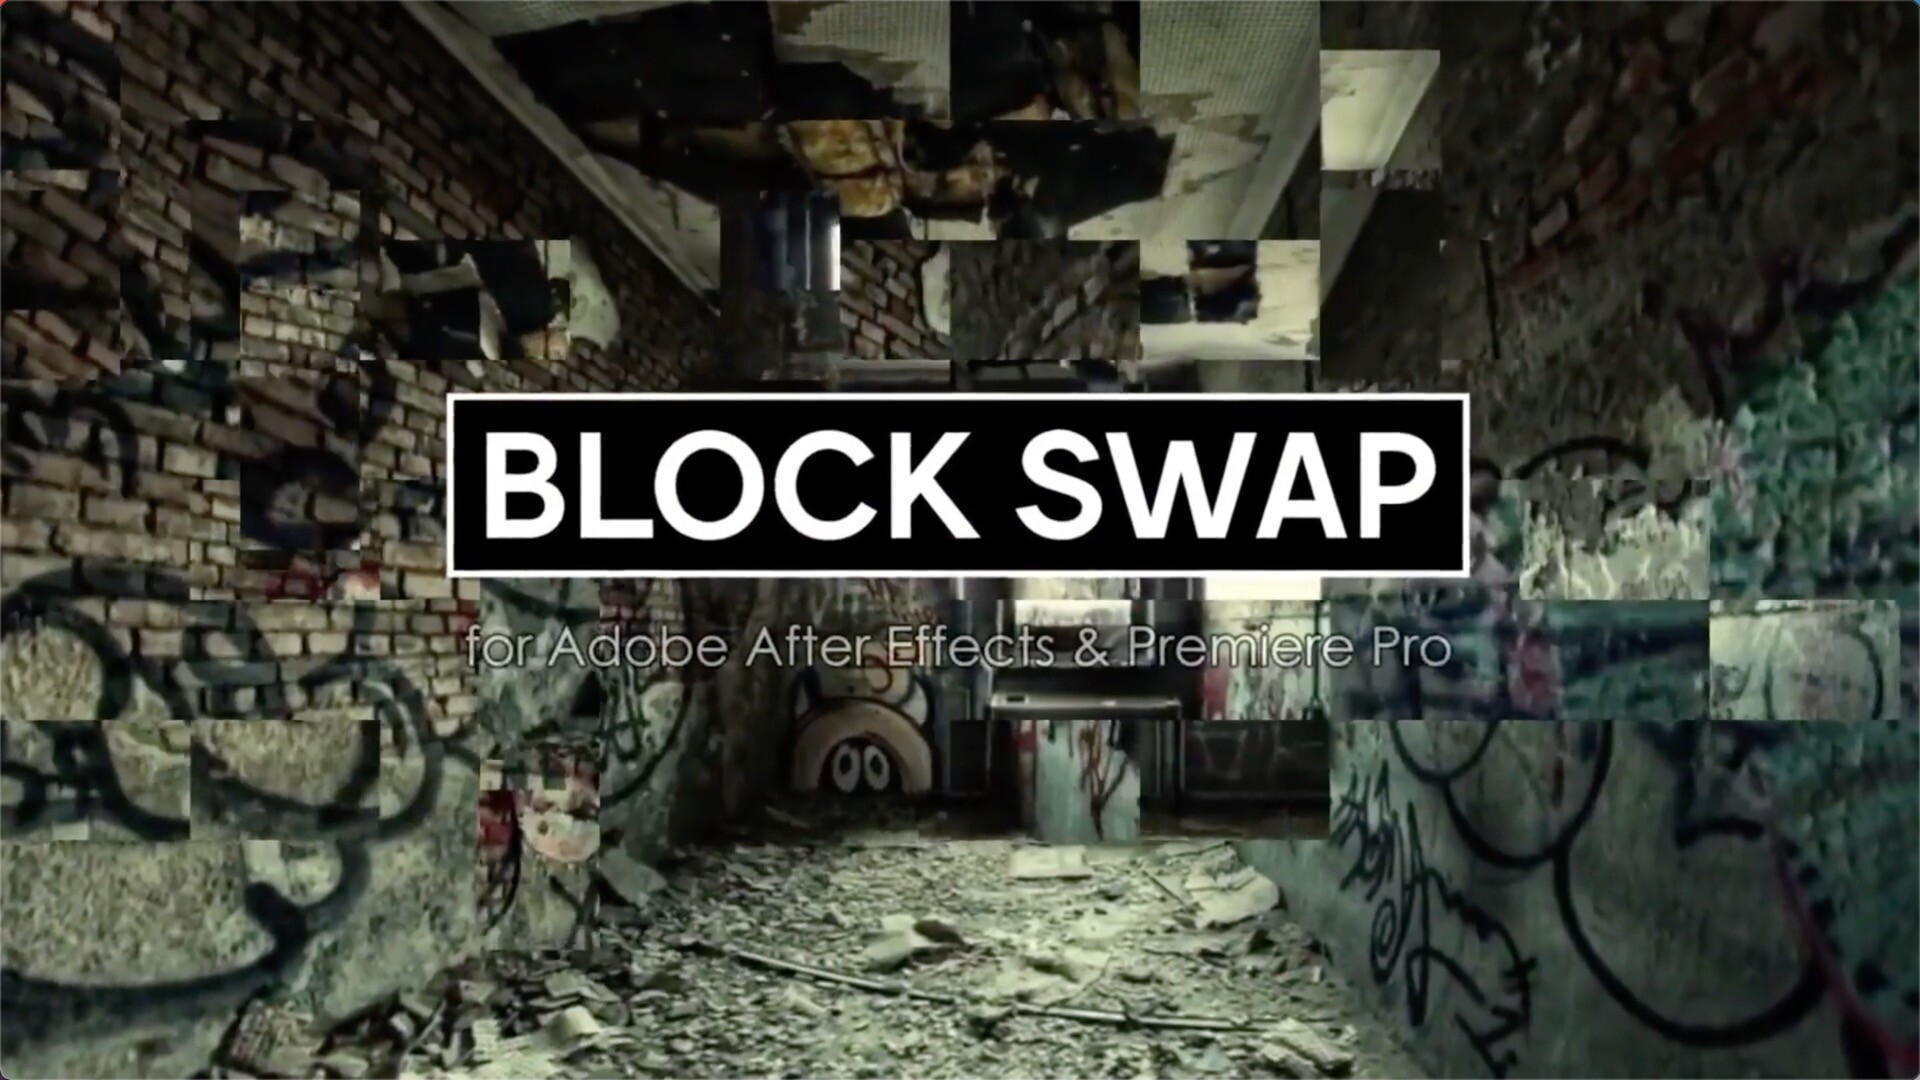 Aescripts Block Swap (AE插件随机生成像素块视觉特效)